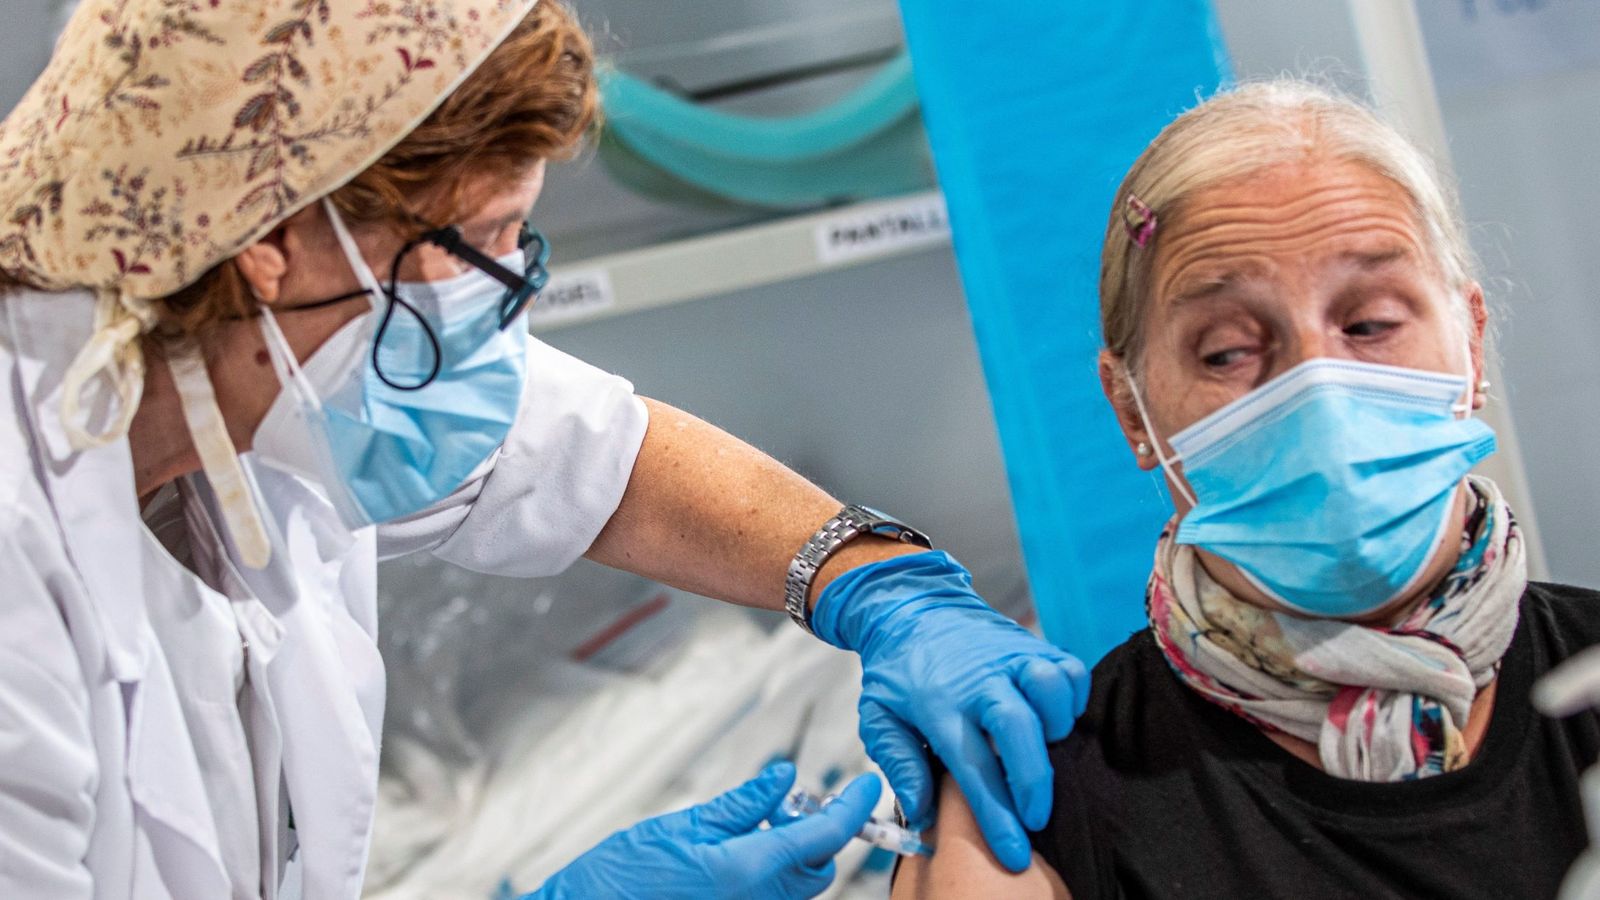 Una persona se vacuna contra la gripe, este lunes en Palma de Mallorca, donde empieza la campaña de vacunación contra la gripe. (EFE)